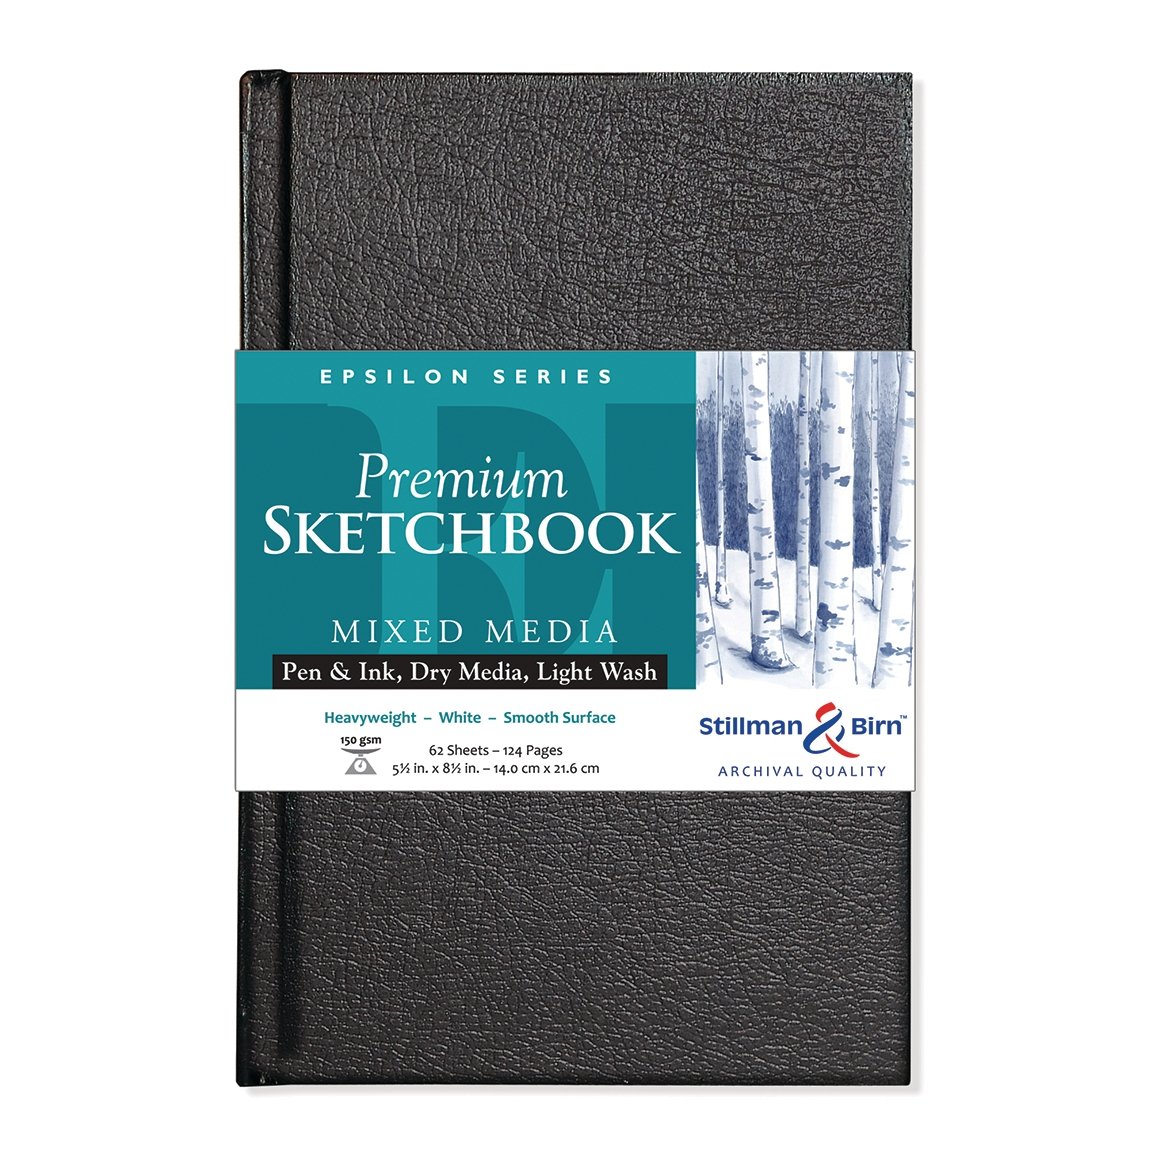 Stillman & Birn Epsilon Hardbound Sketchbook 5.5x8.5 inch - merriartist.com